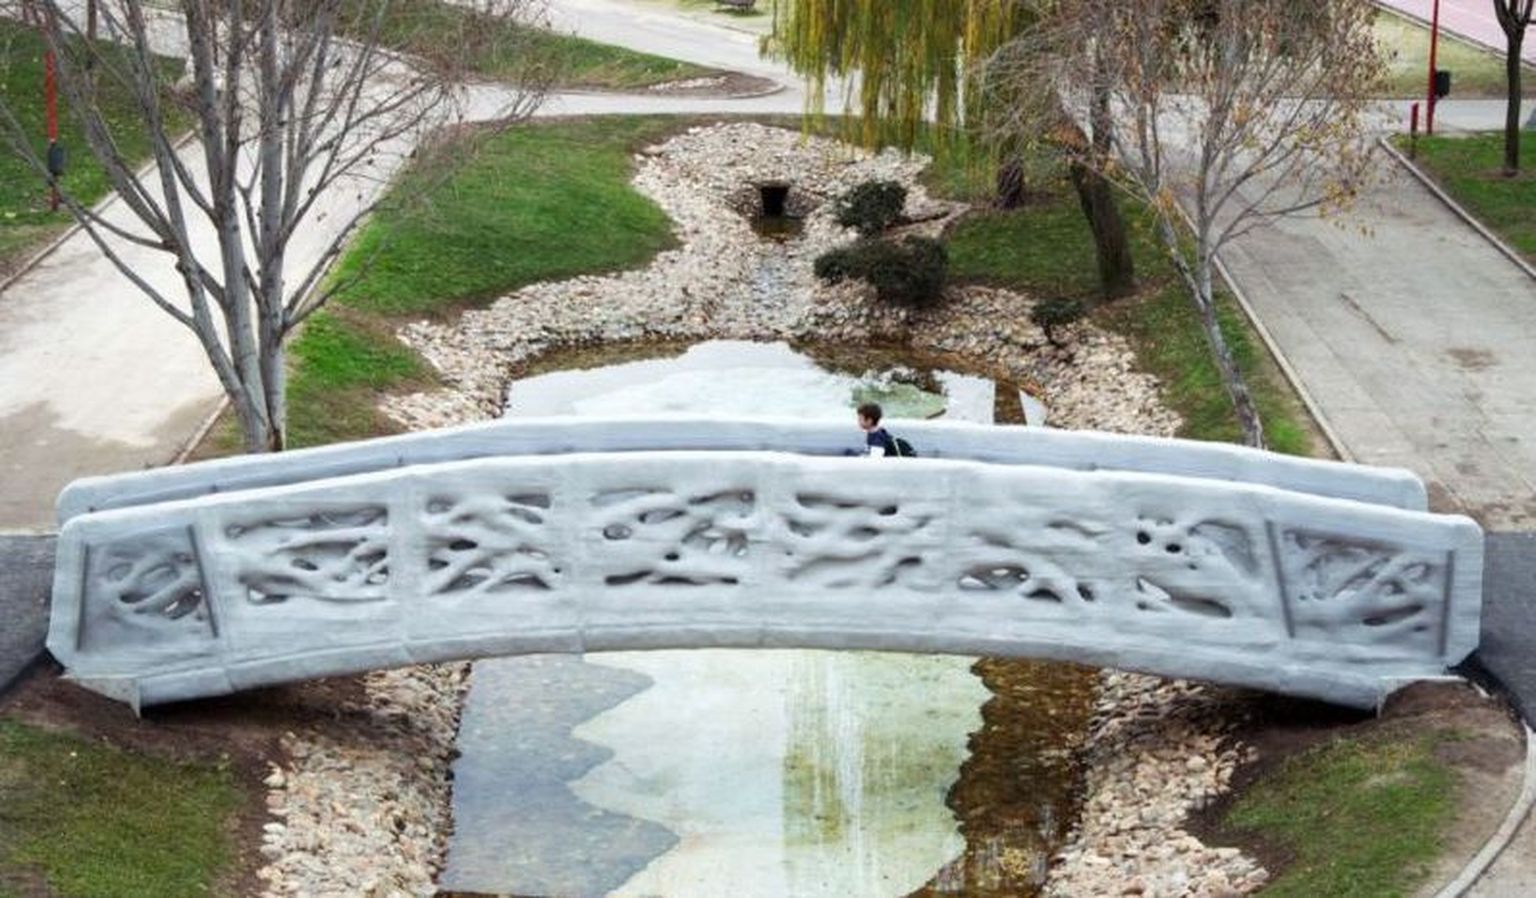 Madridis avati maailma esimene 3D prinditud sild